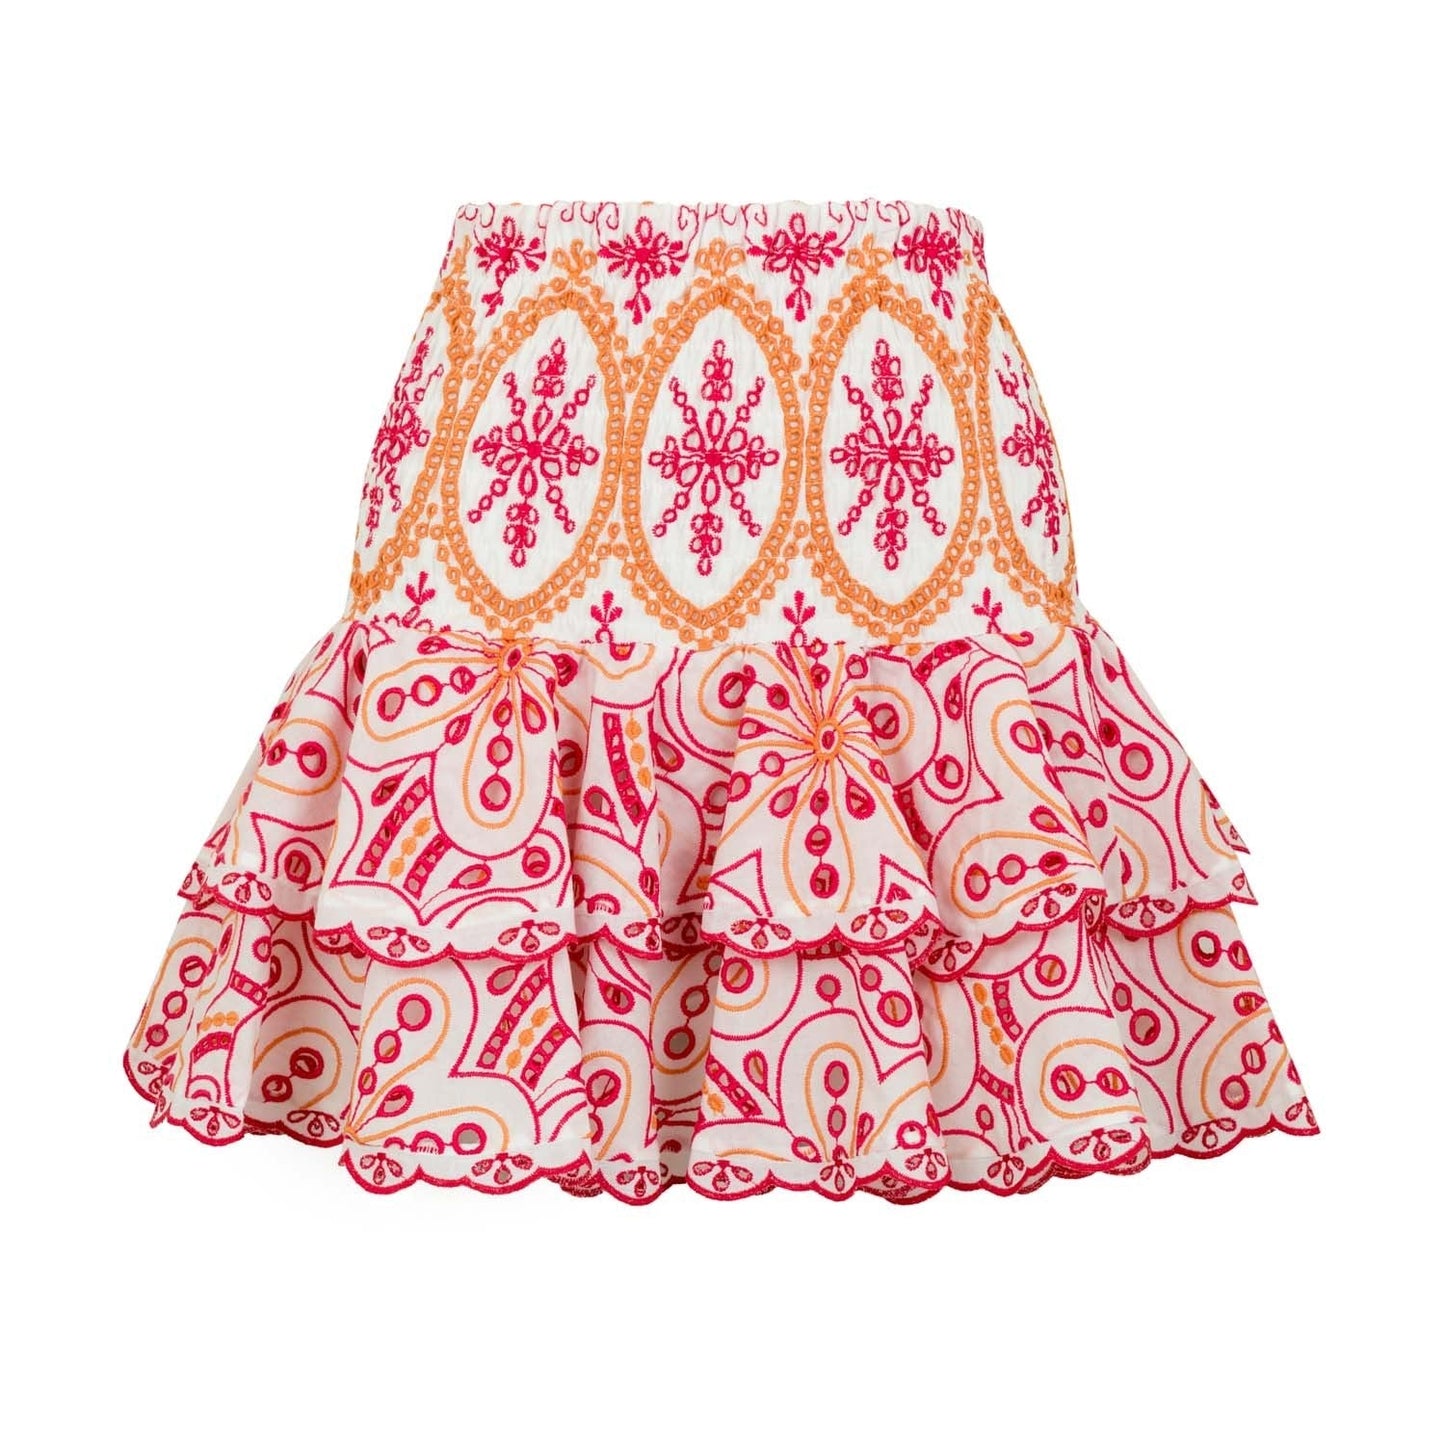 Charo Ruiz Ibiza Short Skirt Noa - Premium Skirts from Charo ruiz - Just $425! Shop now at Marina St Barth